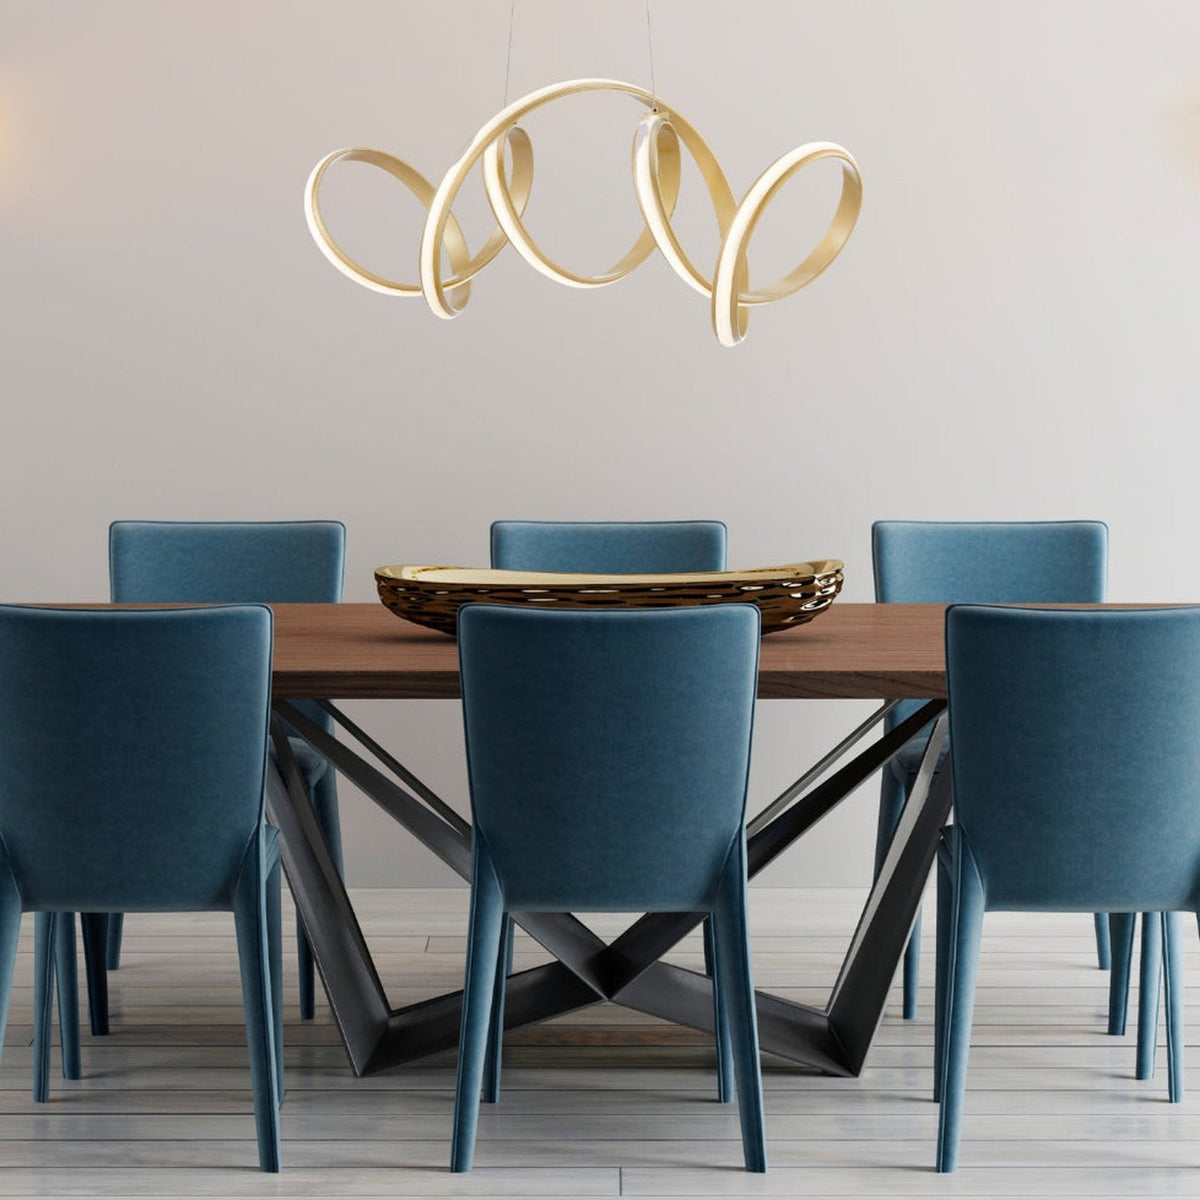 Seville LED Gold Chandelier for Dining Room